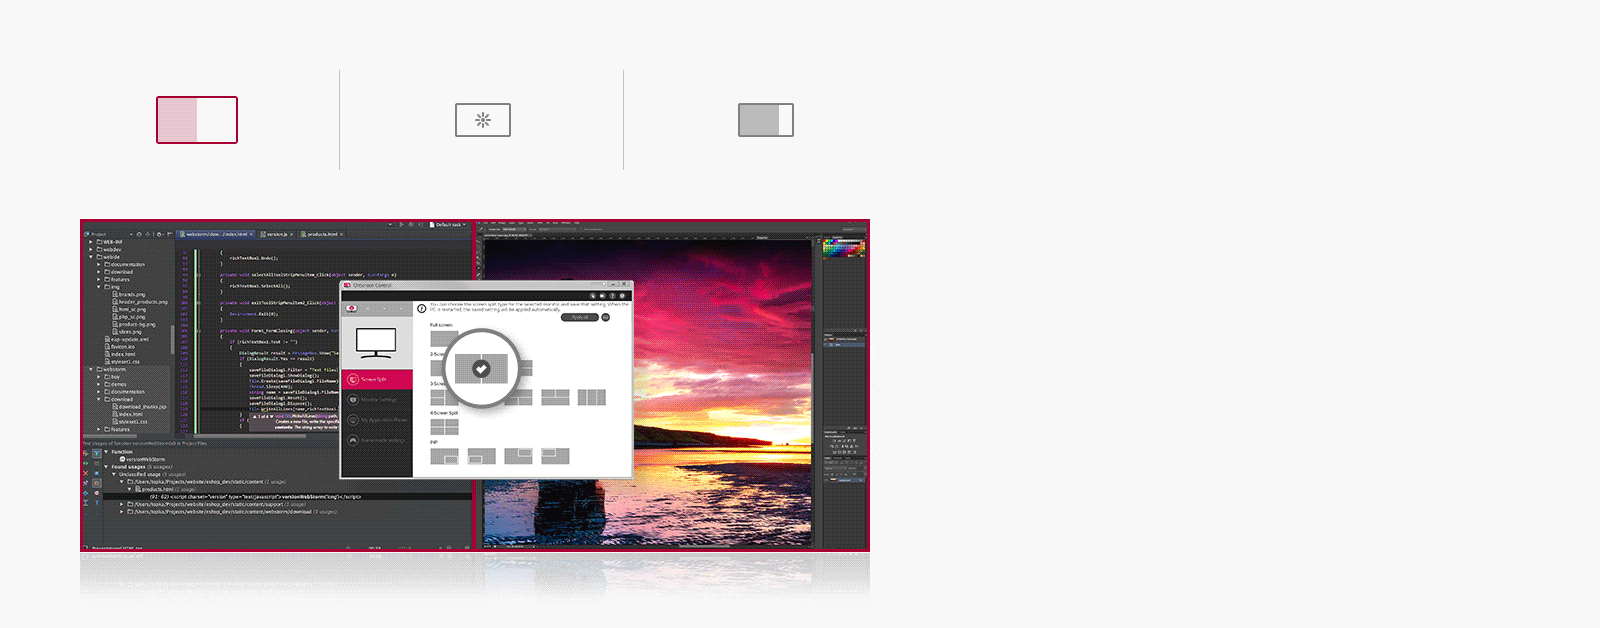 OnScreen Control: Divisão de tela | Configuração do monitor | Visualização 5:9